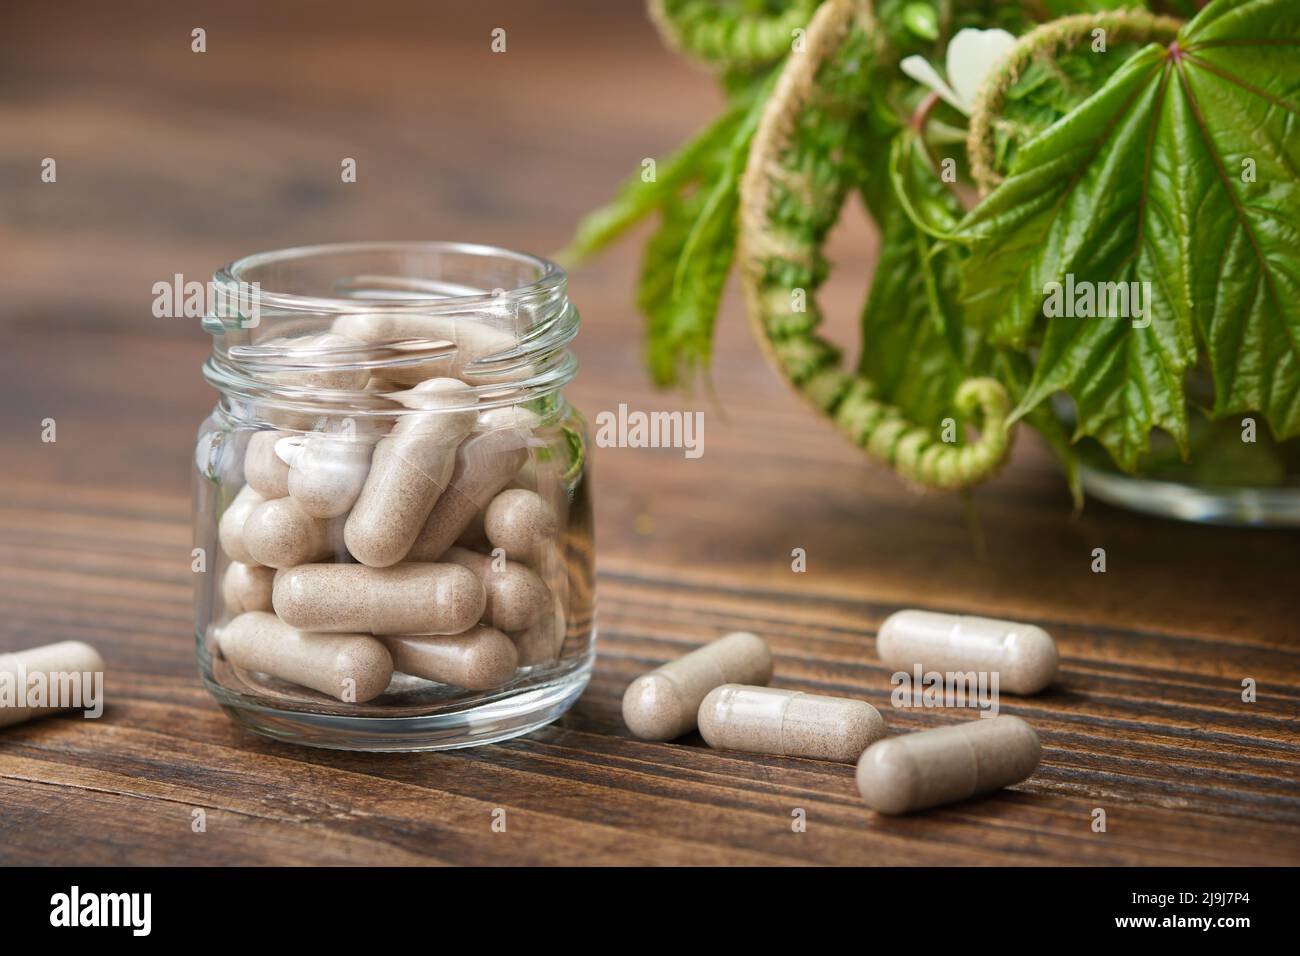 Píldoras herbarias, tarro de tabletas naturales. Hierbas medicinales curativas en el fondo. Foto de stock